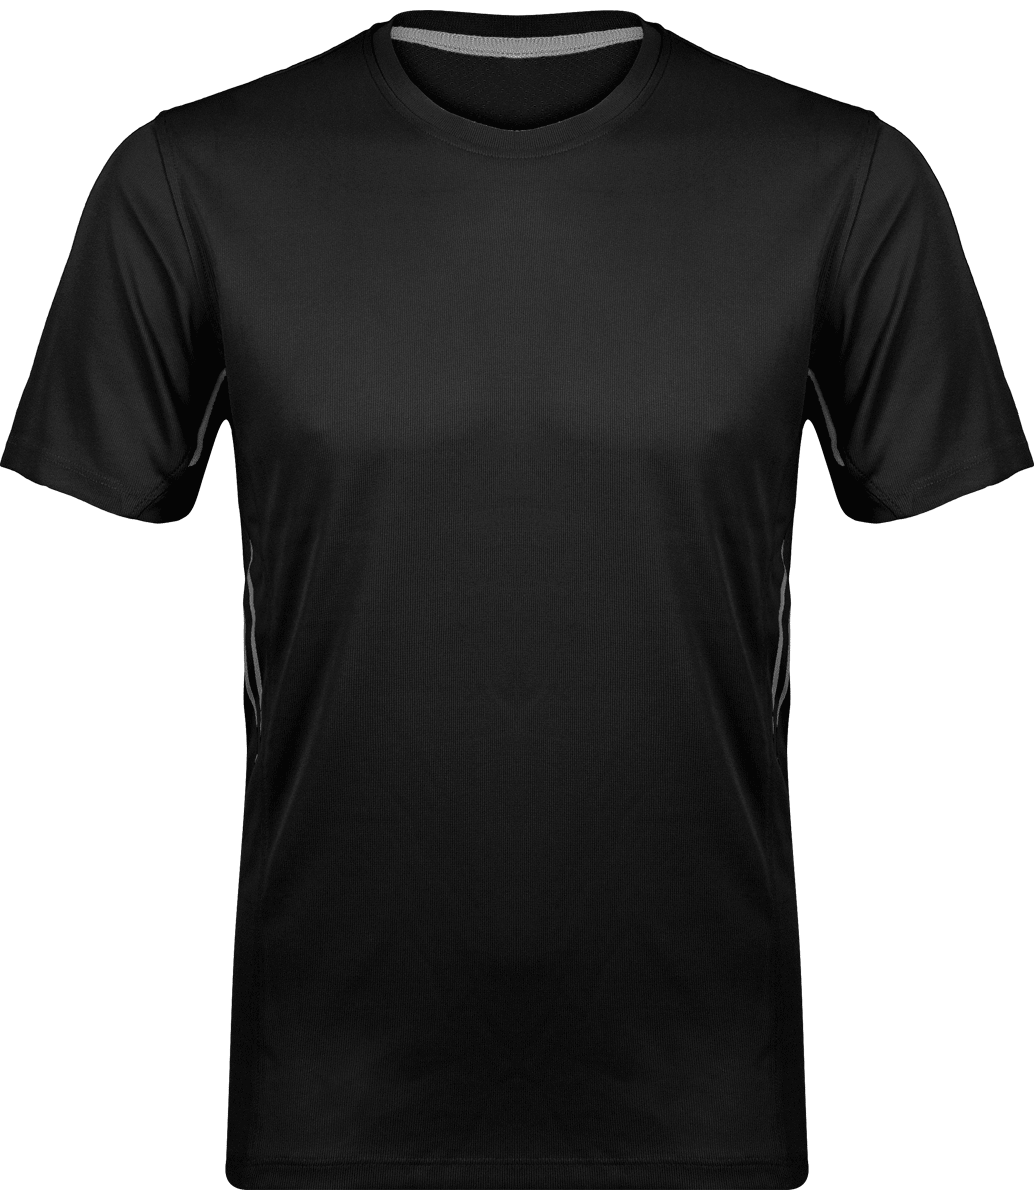 Camiseta Hombre Deporte | Ligera Y Transpirable | Bordado Y Estampado Black / Silver